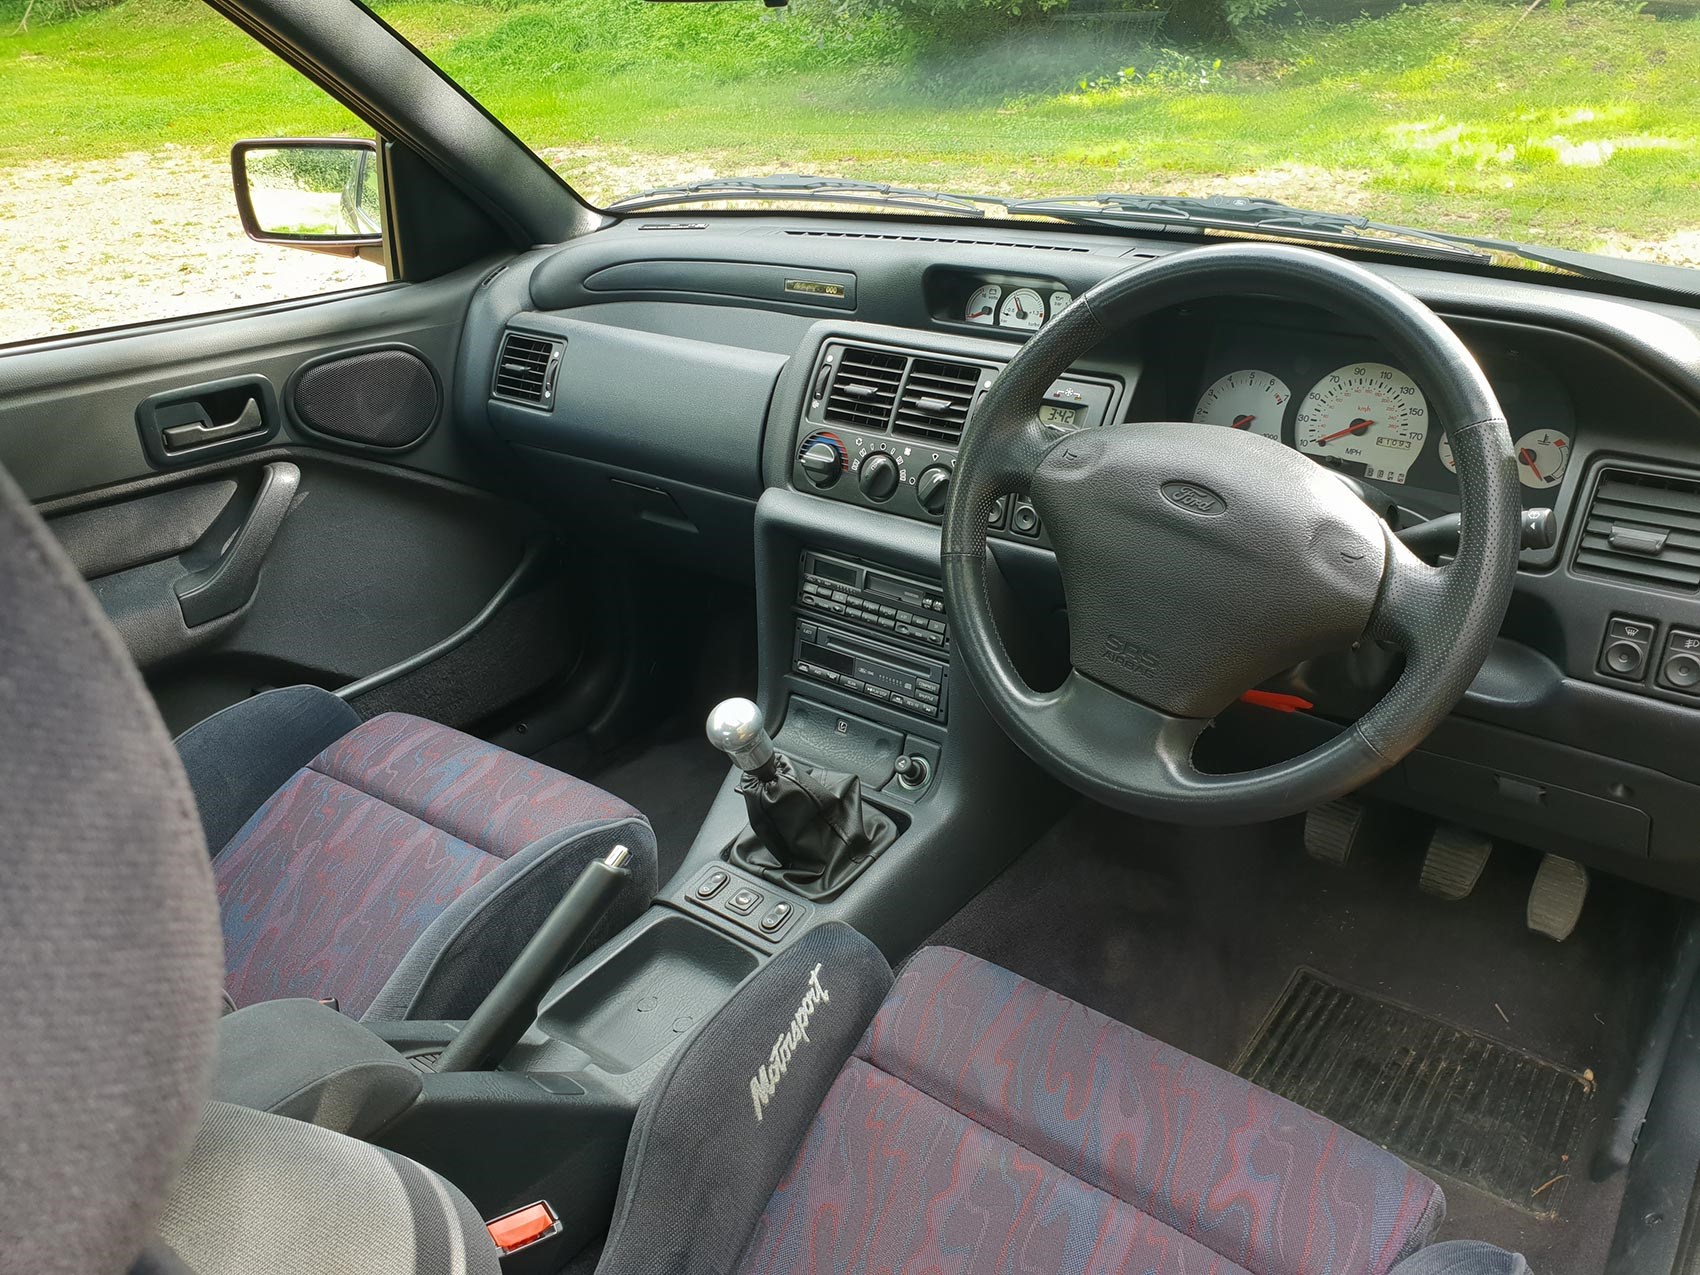 Ford Escort Cosworth interior and cabin